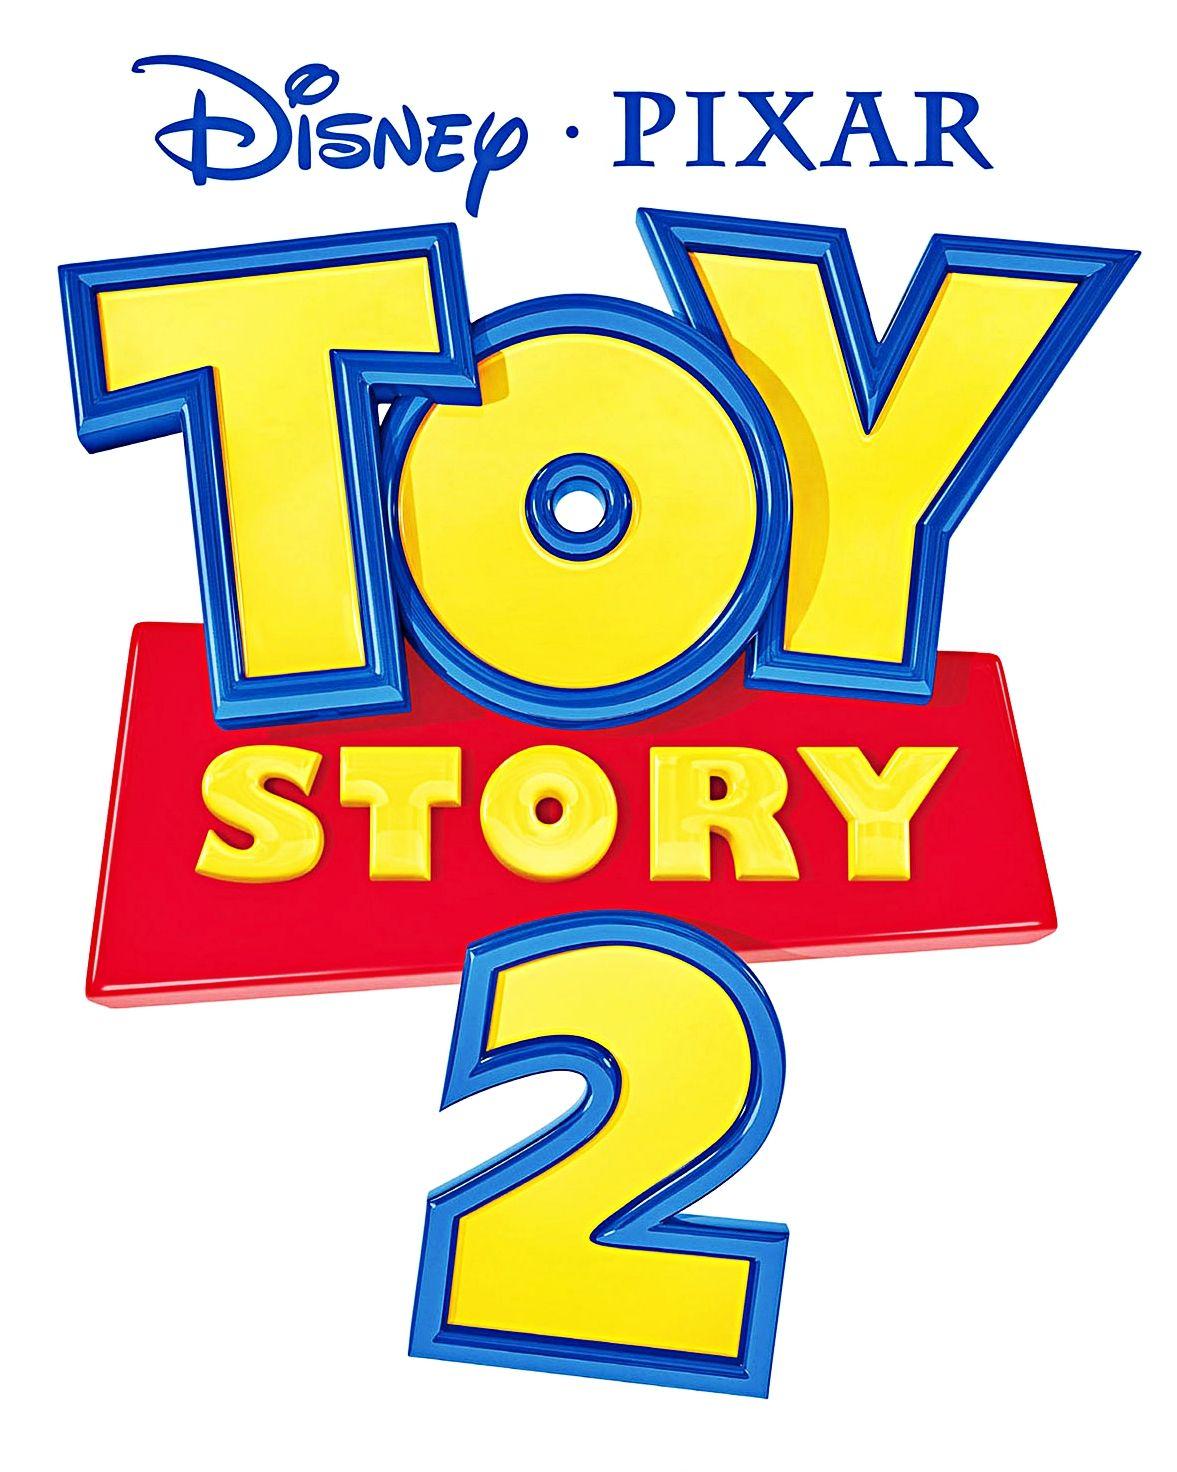 Toy Story Logo